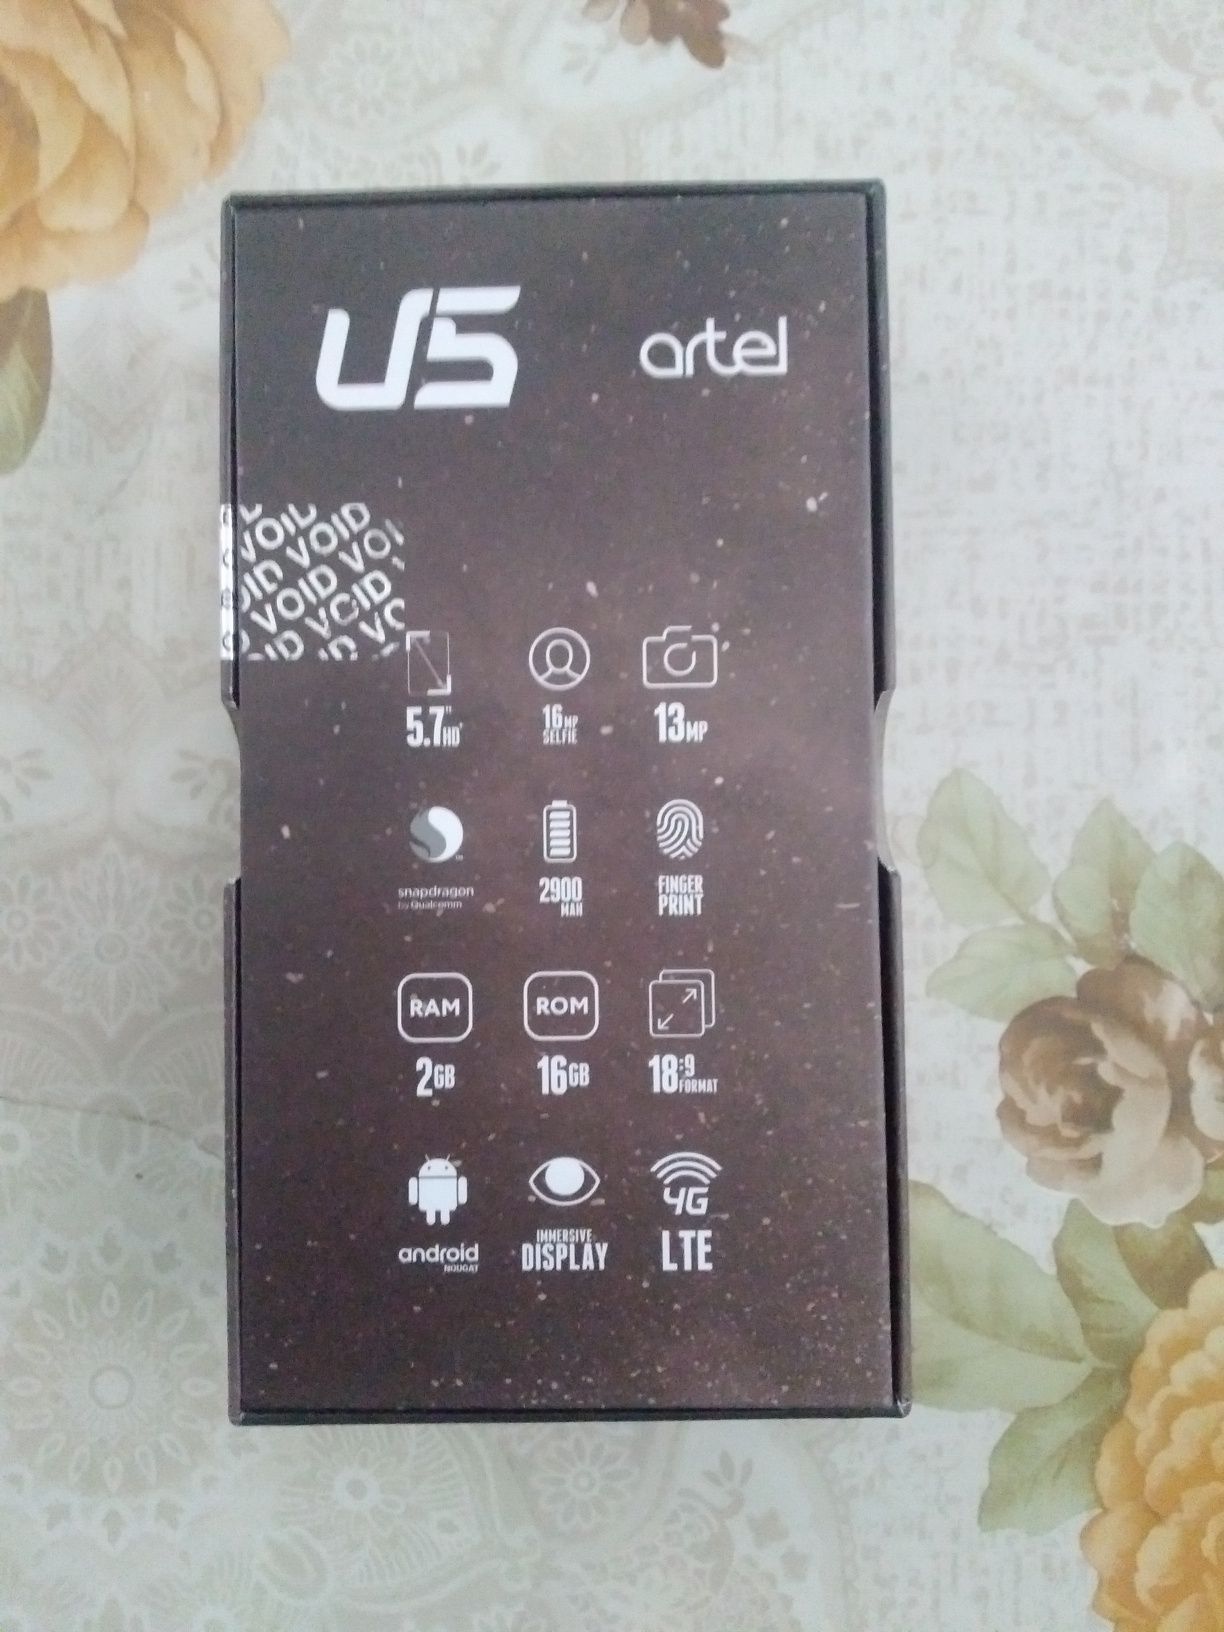 Arter U5 (4G LTE) 2/16 Gb